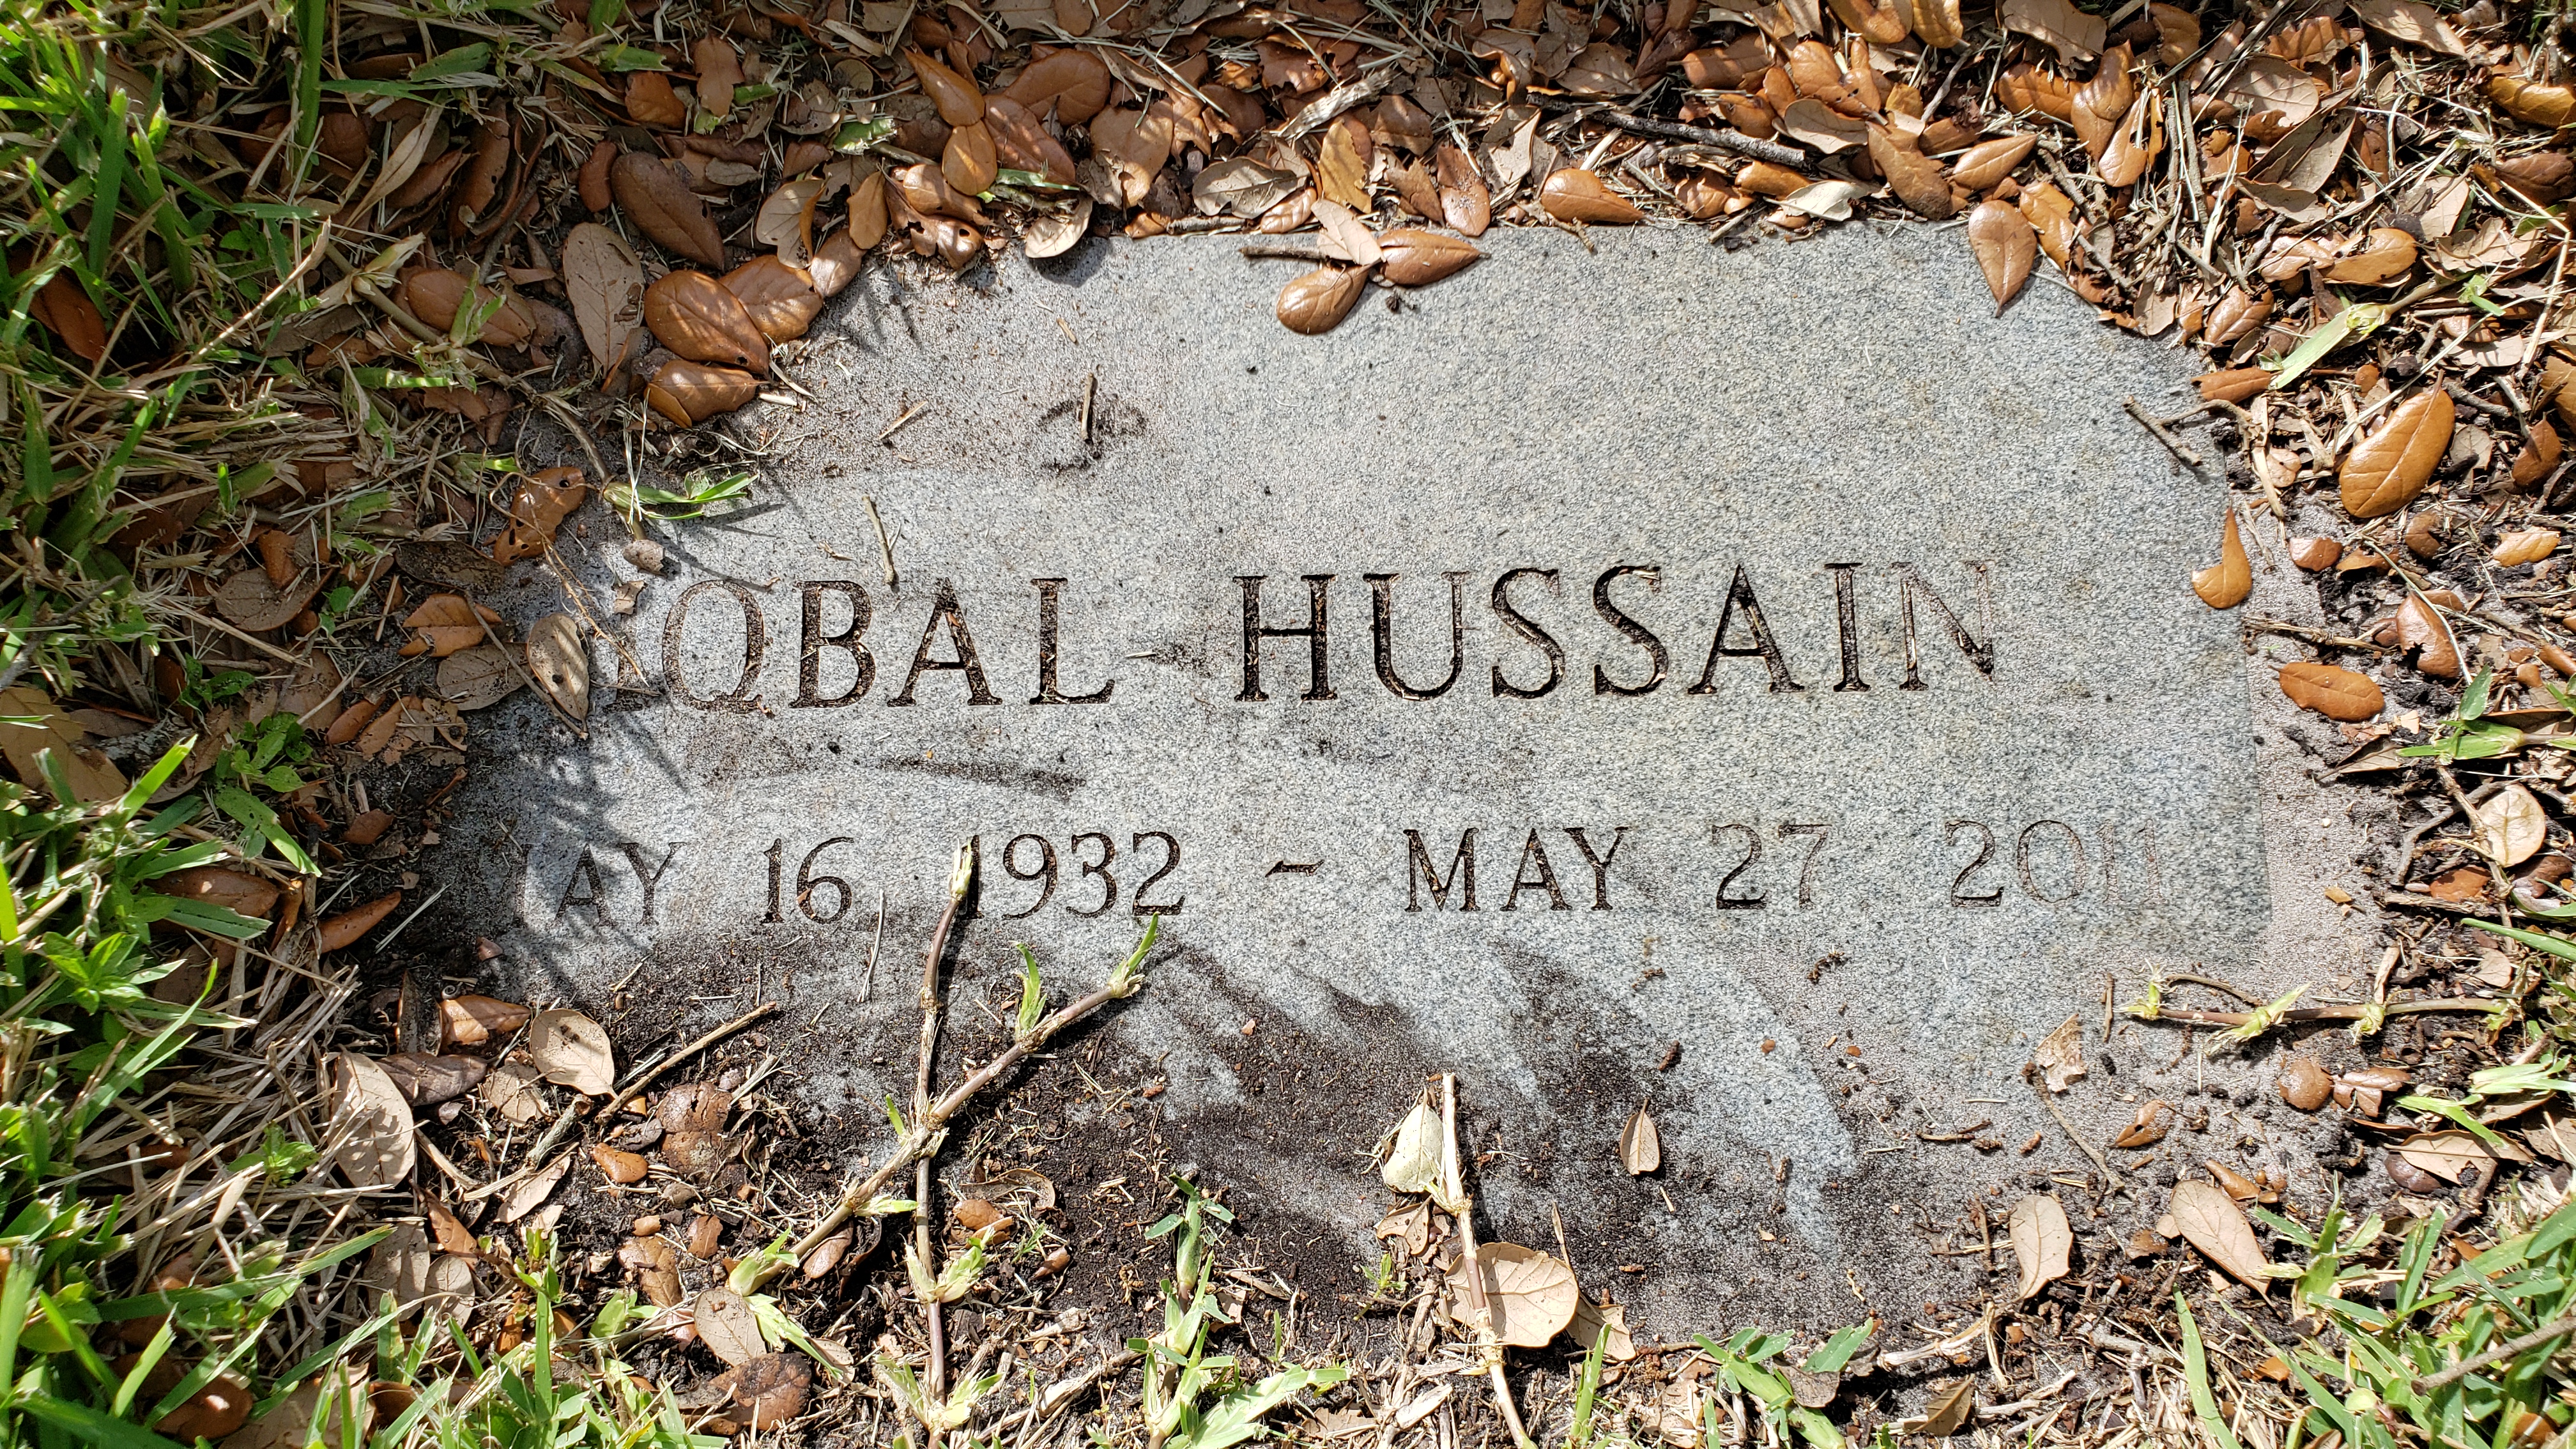 Iqbal Hussain